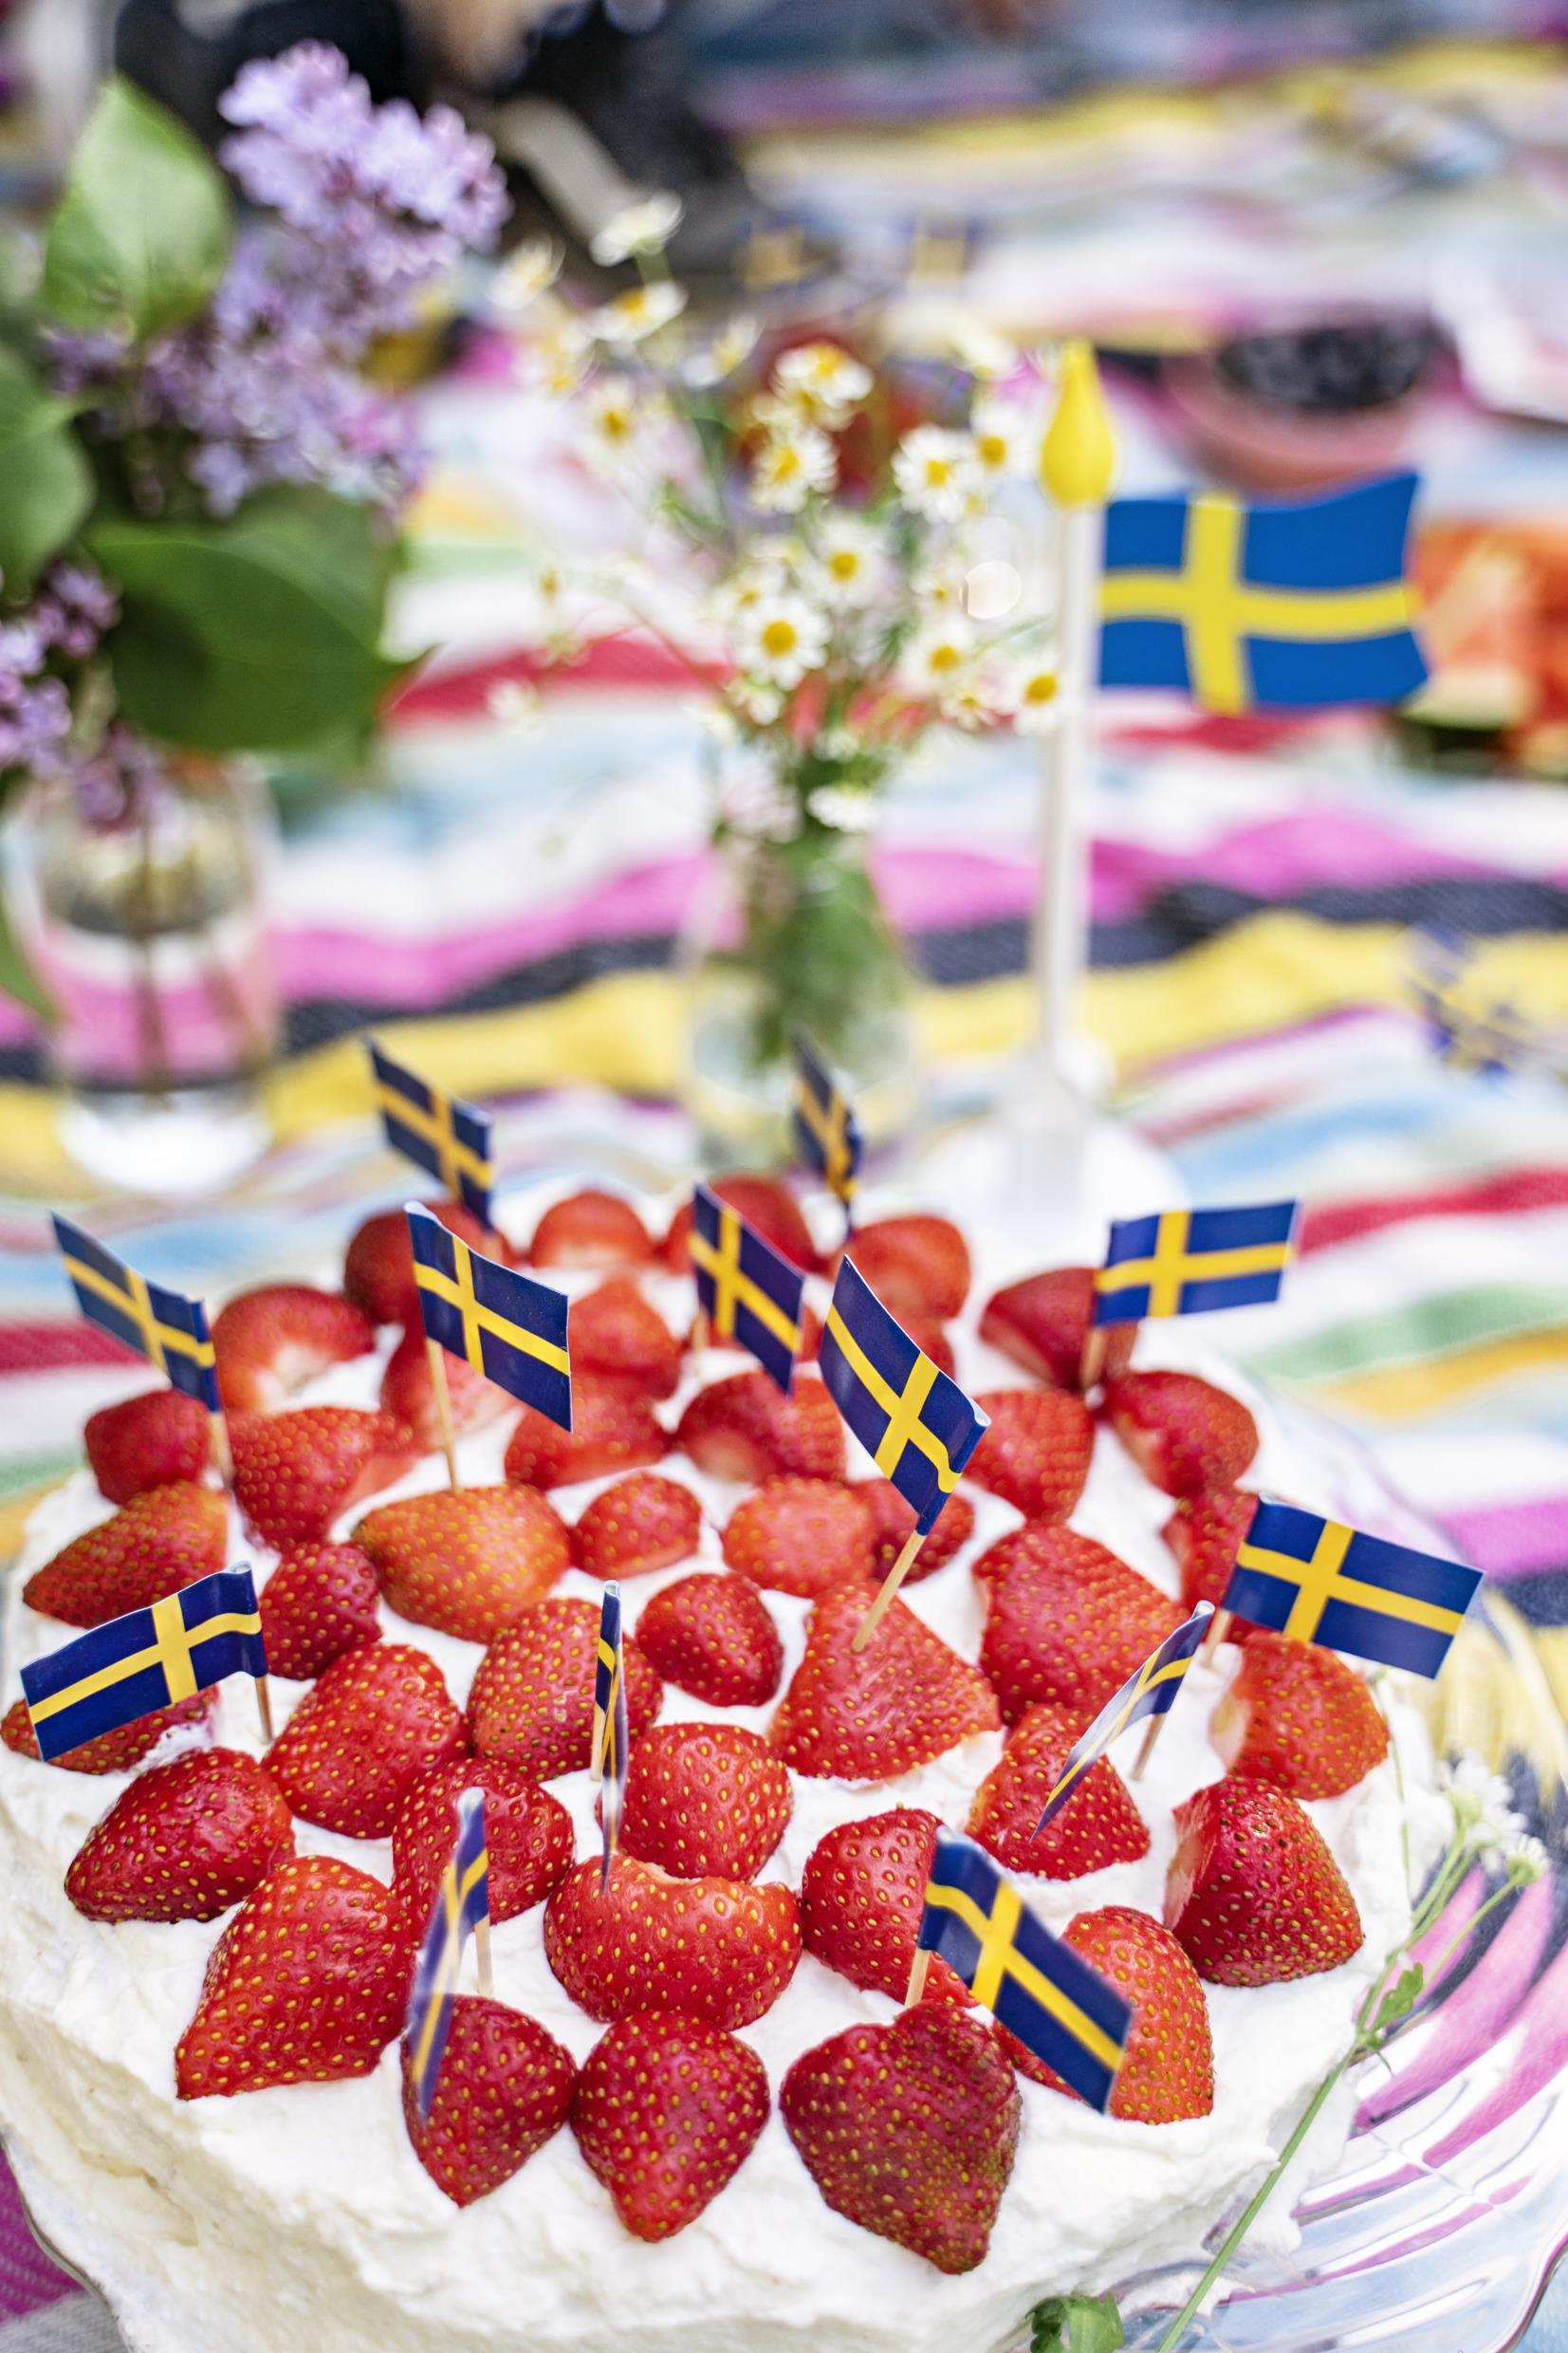 كعكة فراولة مزينة بالعديد من الأعلام السويدية الصغيرة.